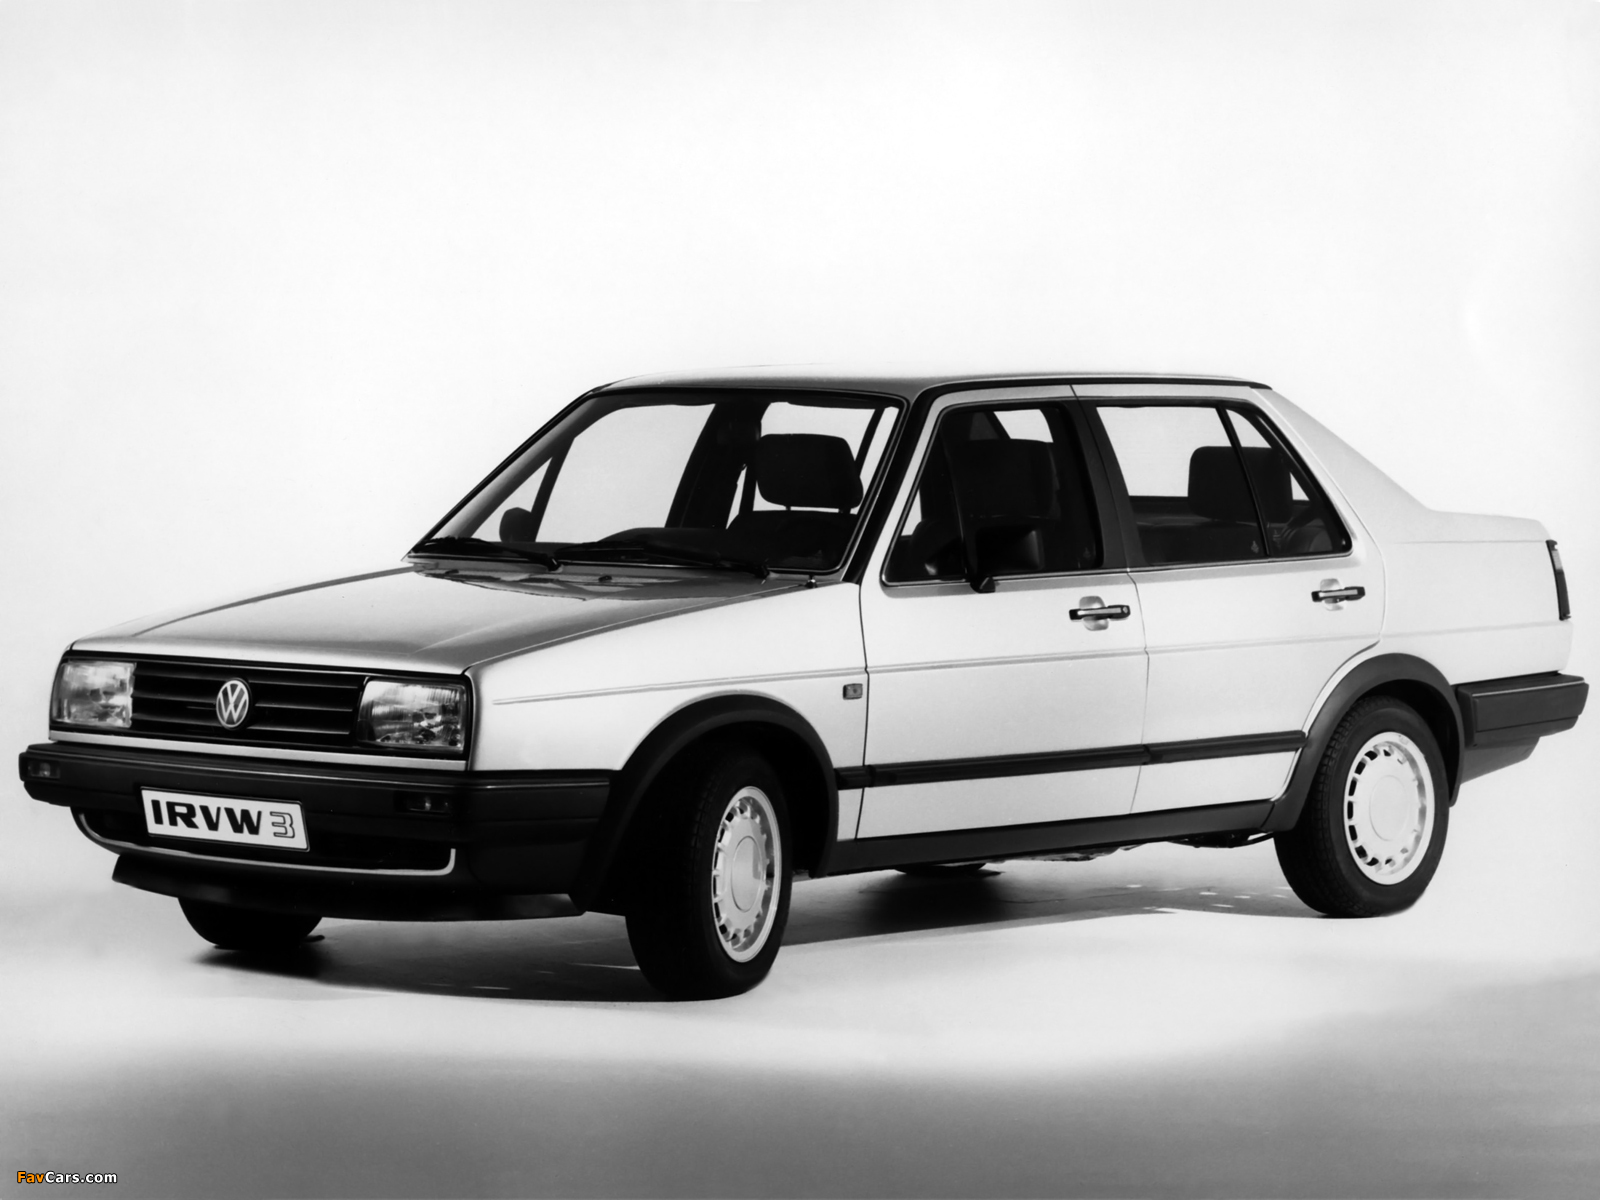 Volkswagen Jetta IRVW 3 (II) 1985 pictures (1600 x 1200)